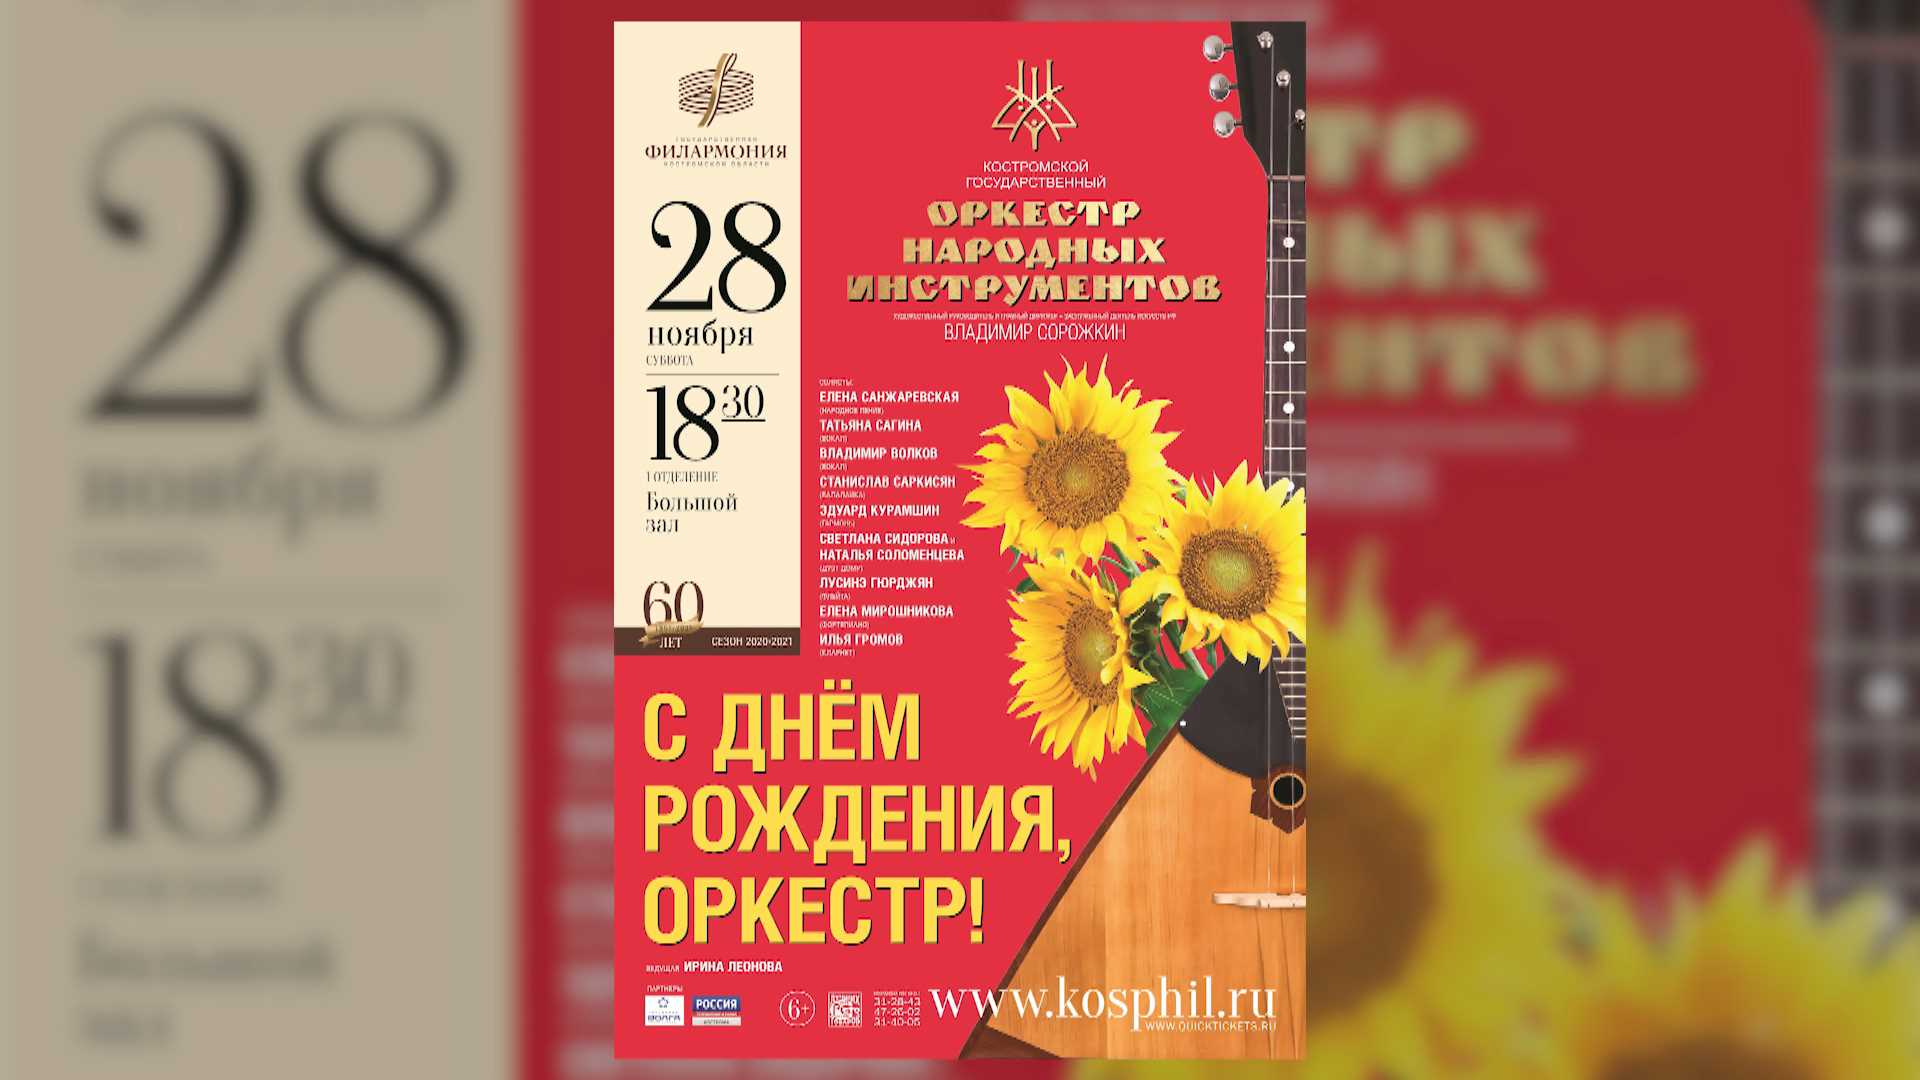 Народное достояние Костромской области отметит день рождения концертом